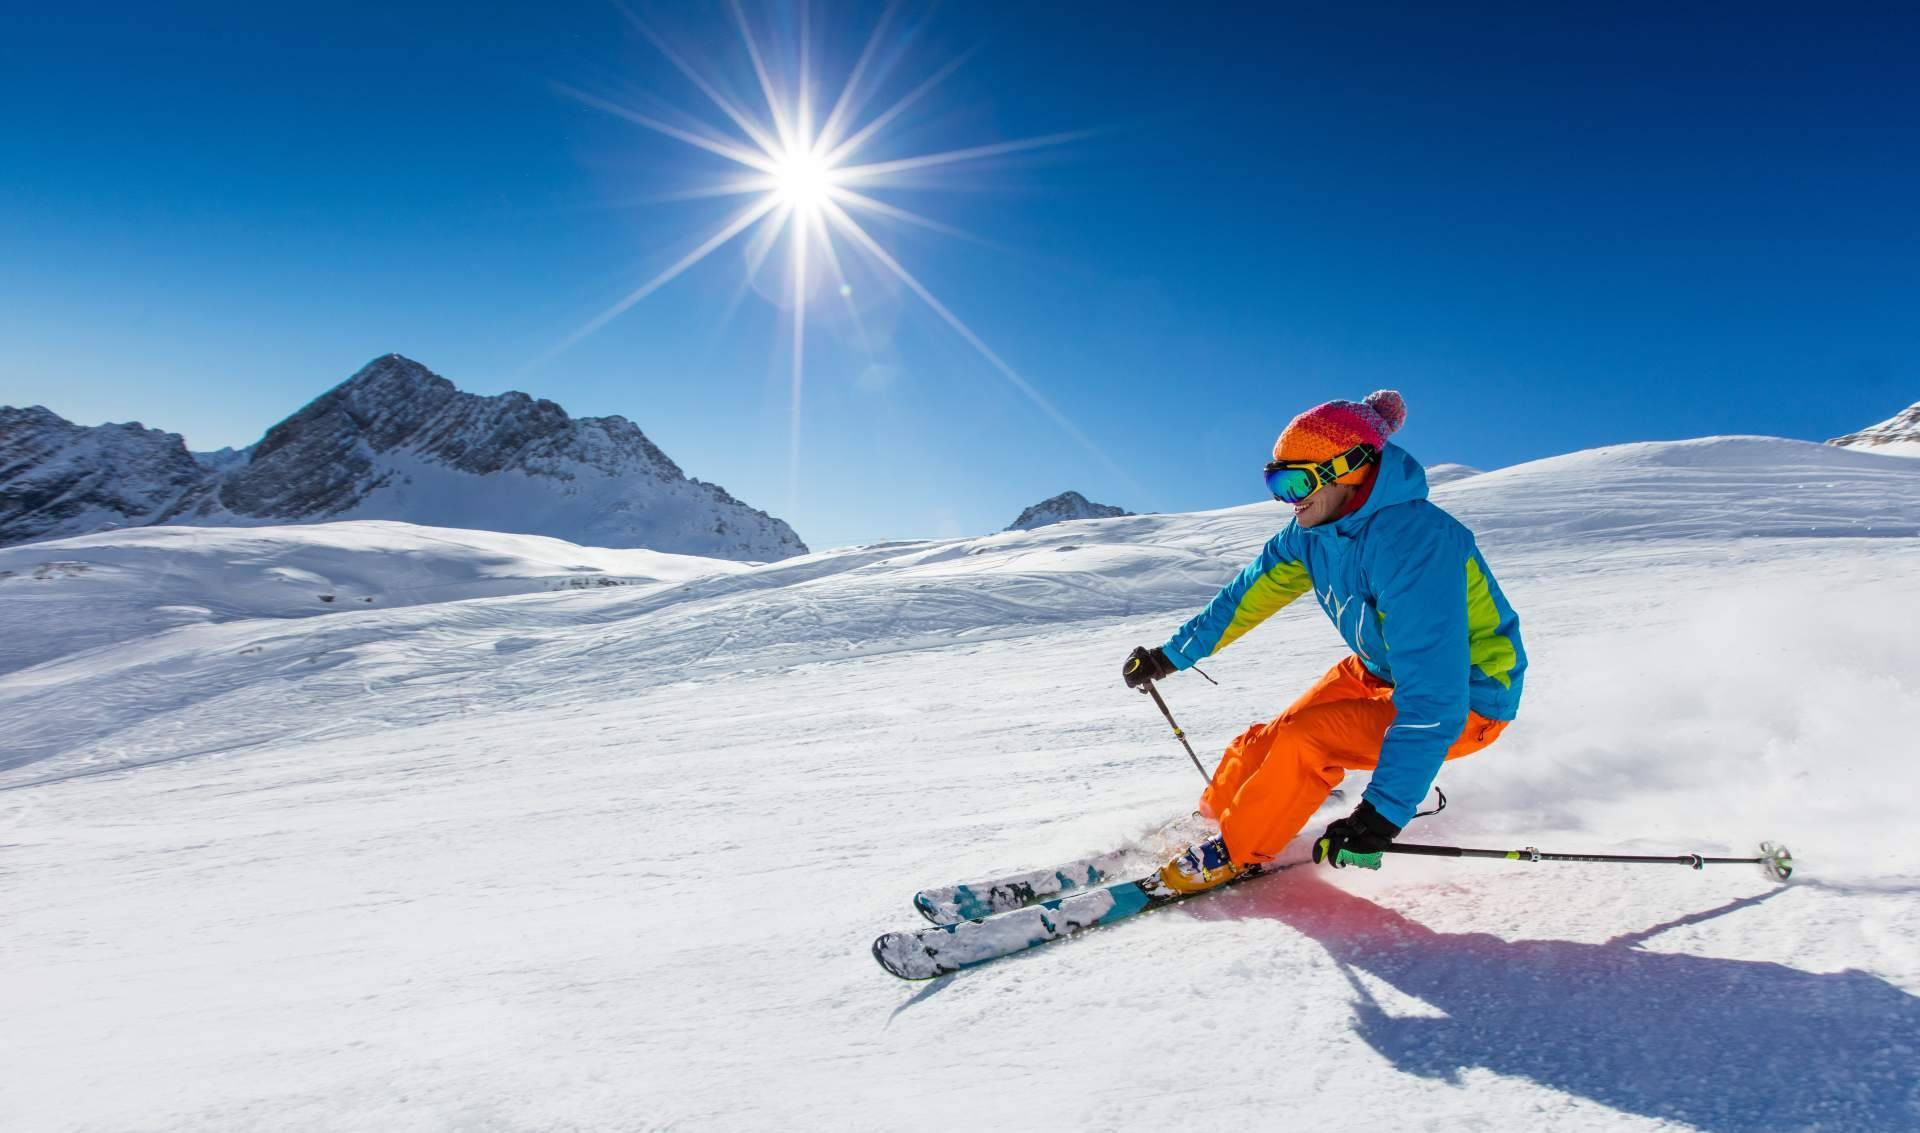  Servicio de alquiler de ropa de nieve con Sierra Nevada Adventure & Ski 